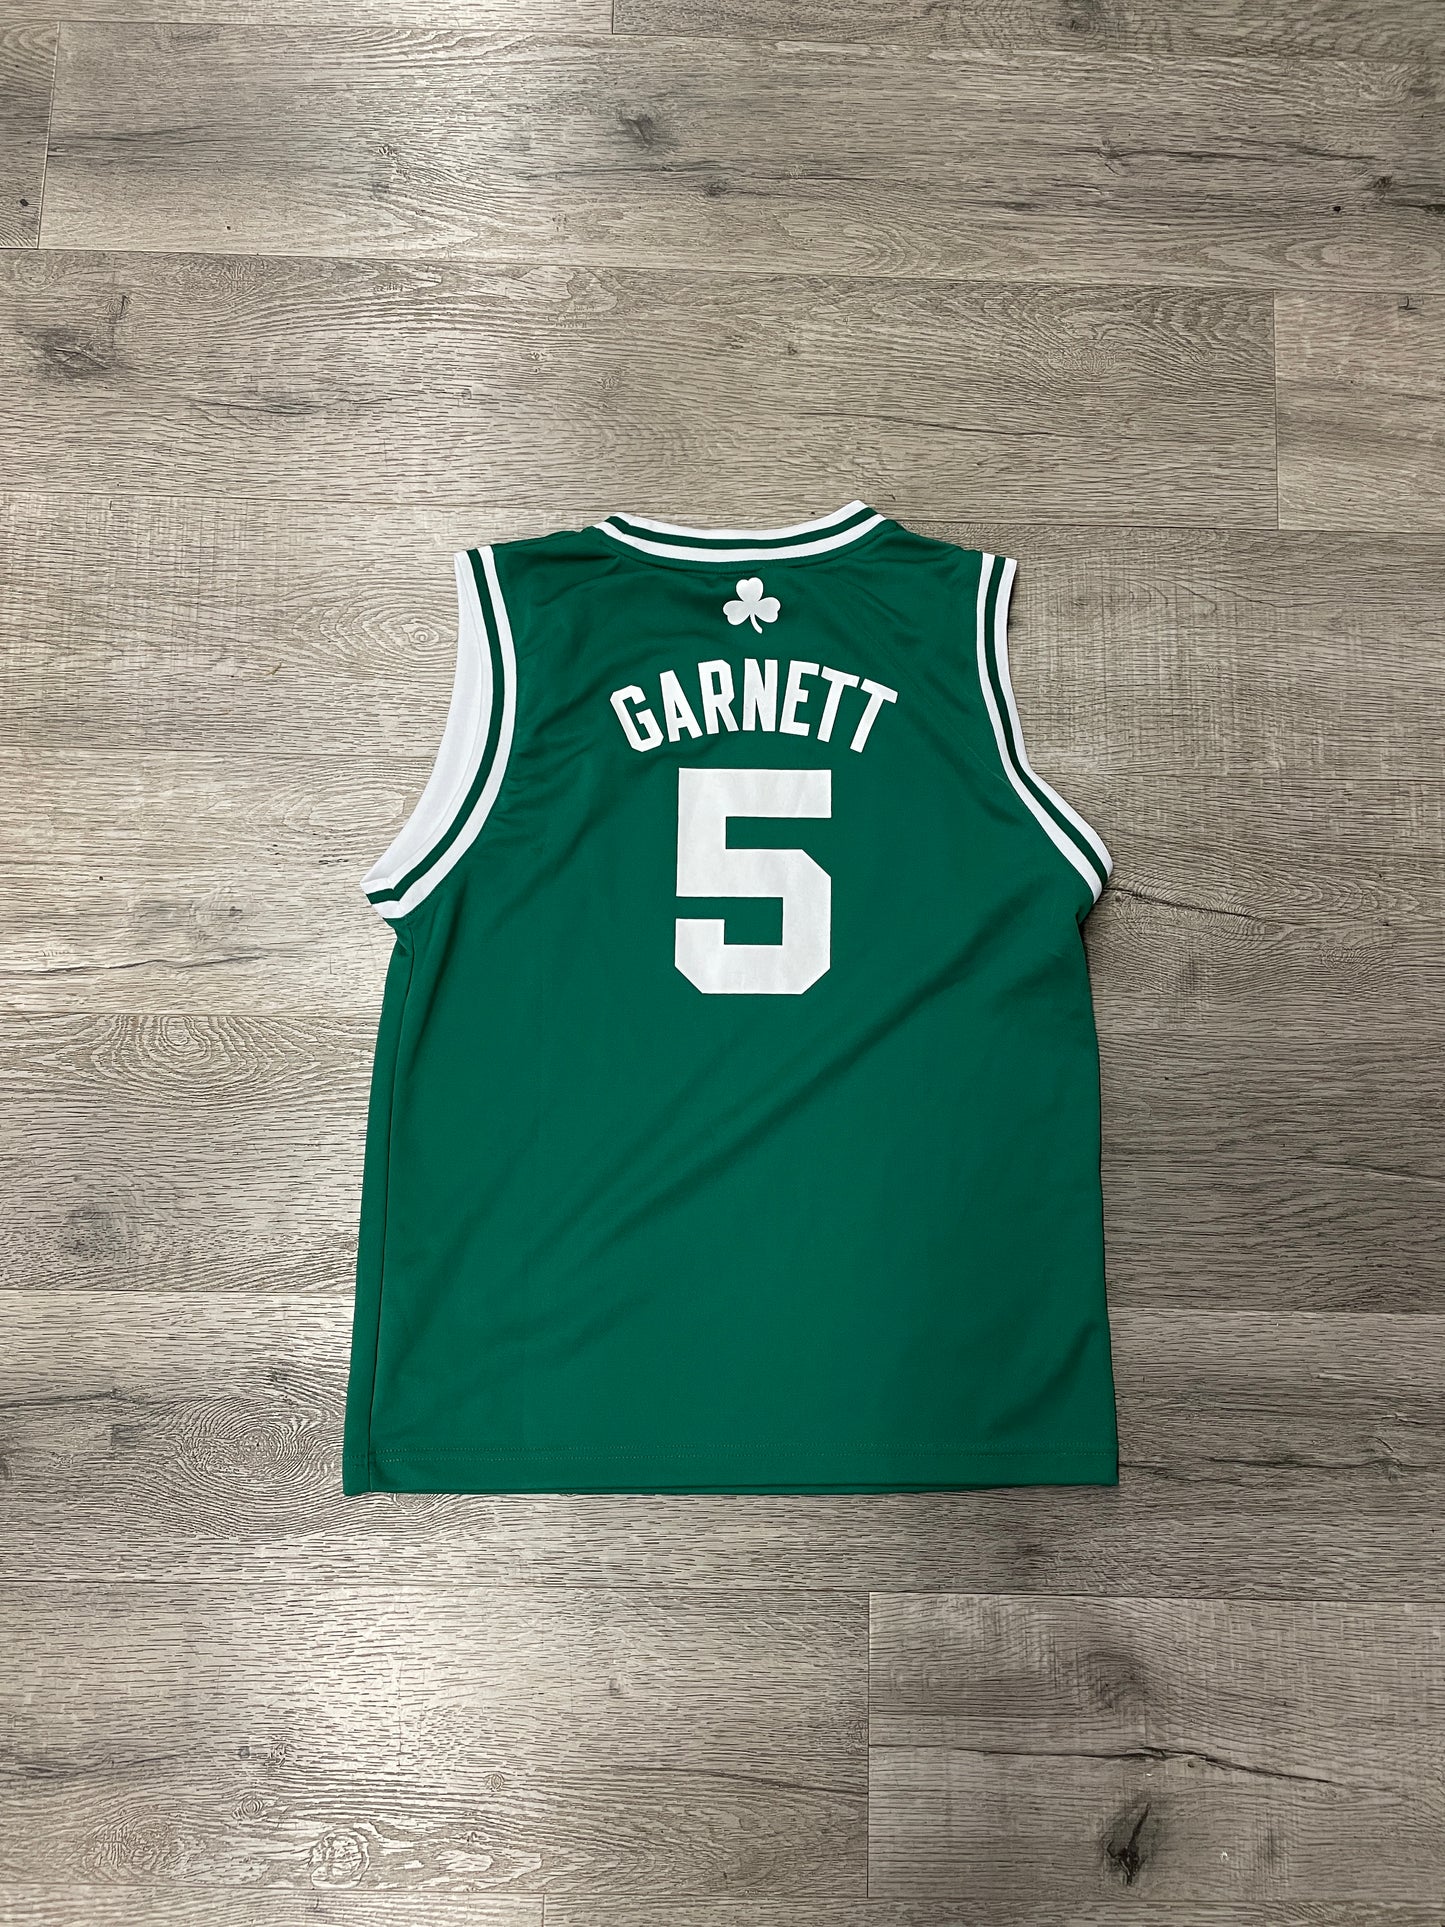 Kevin Garnett Celtics Adidas Jersey